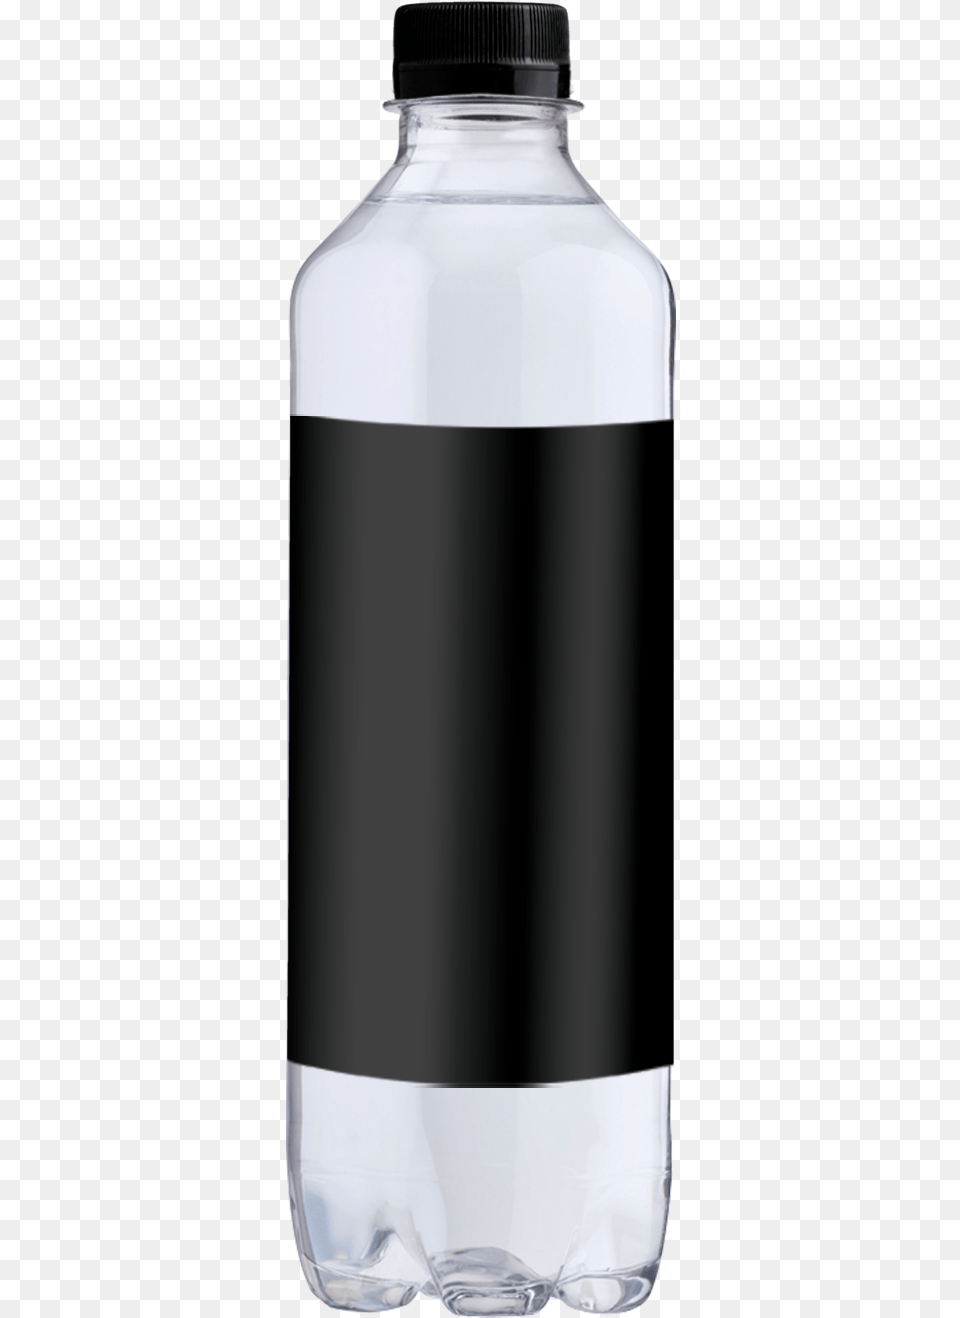 Water, Bottle, Jar, Water Bottle, Shaker Png Image